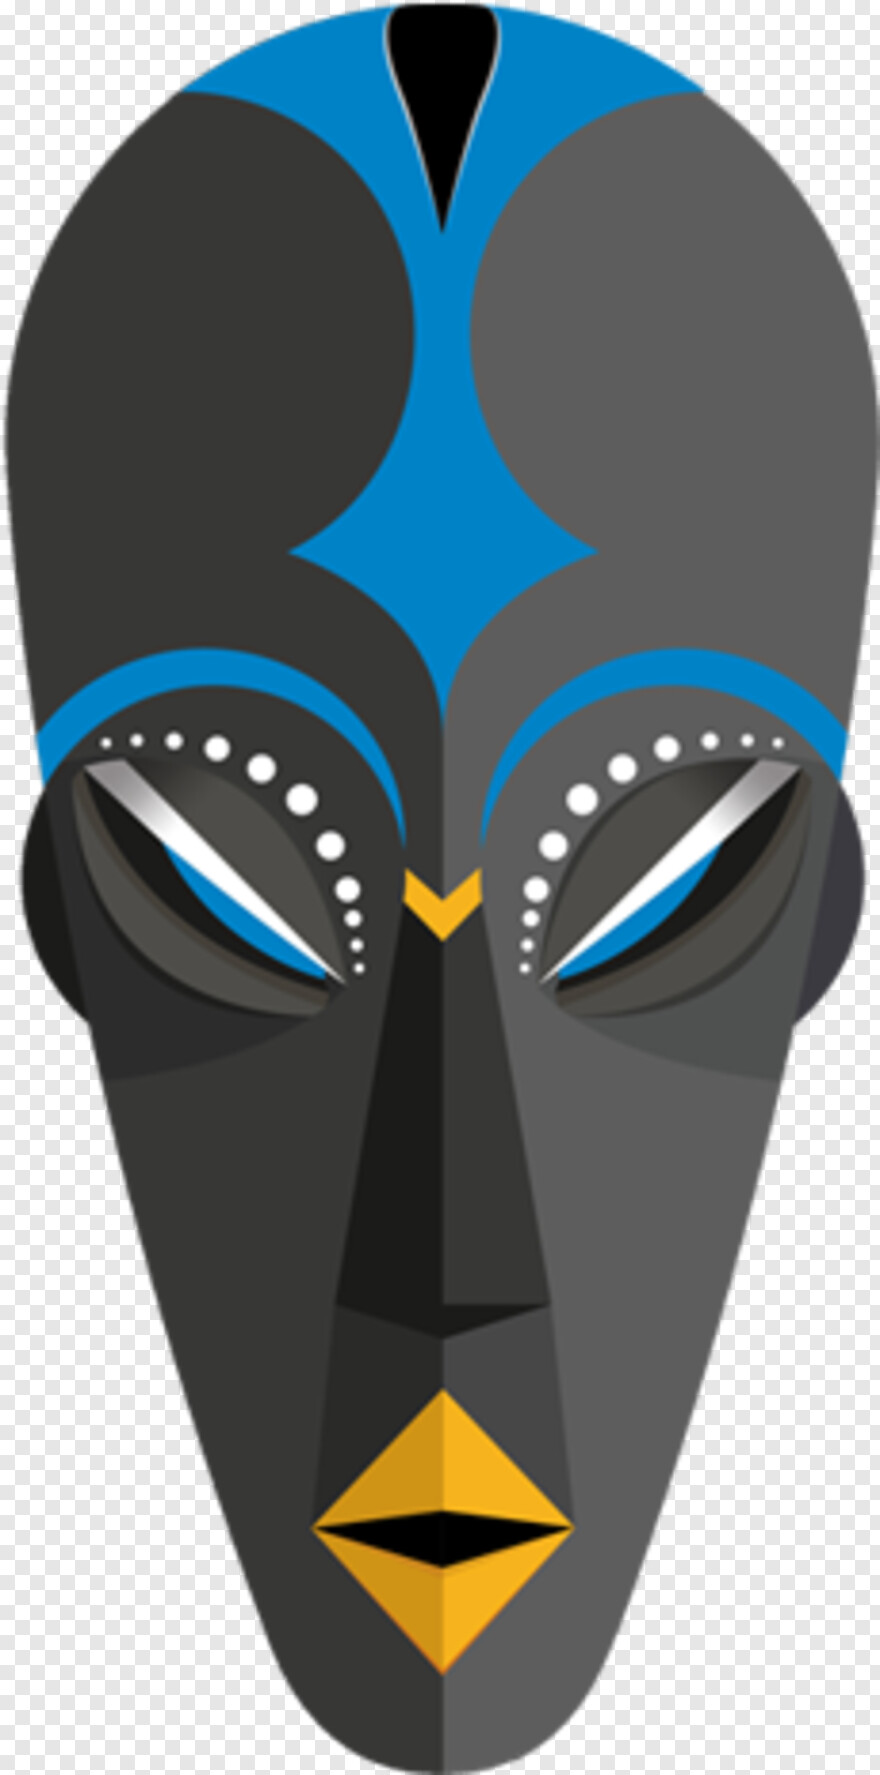  Mardi Gras Mask, Superhero Mask, Anonymous Mask, Guy Fawkes Mask, Spiderman Mask, Jason Mask